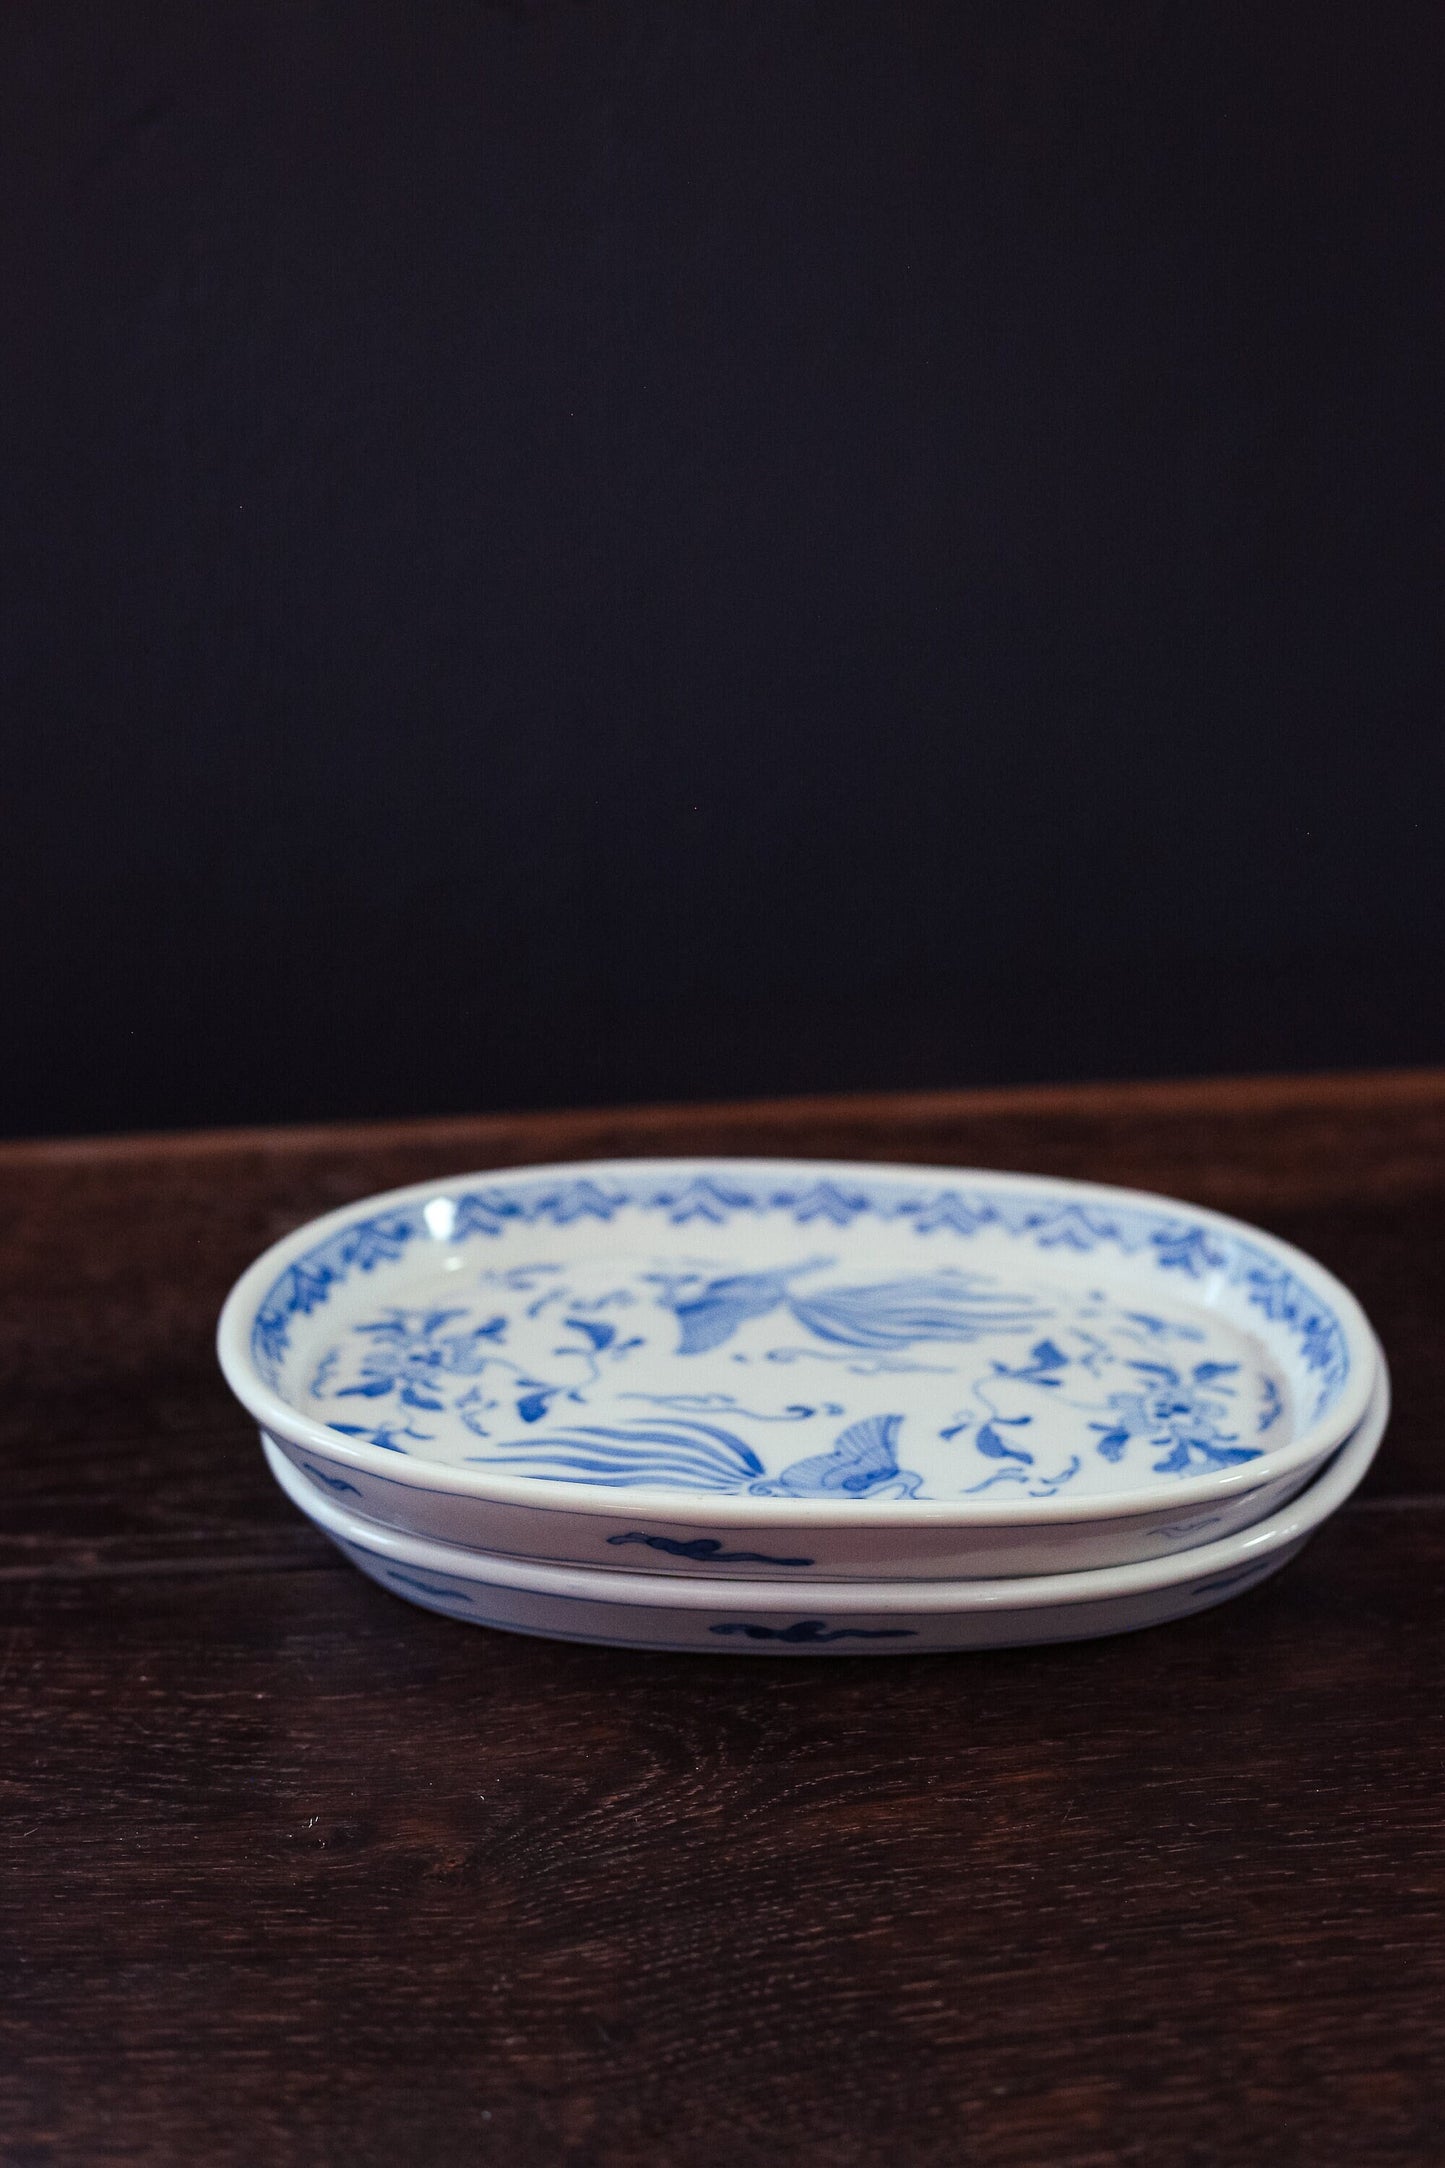 Pair of Blue White Phoenix Porcelain Low Dishes - Vintage Japanese Porcelain Serving Plates